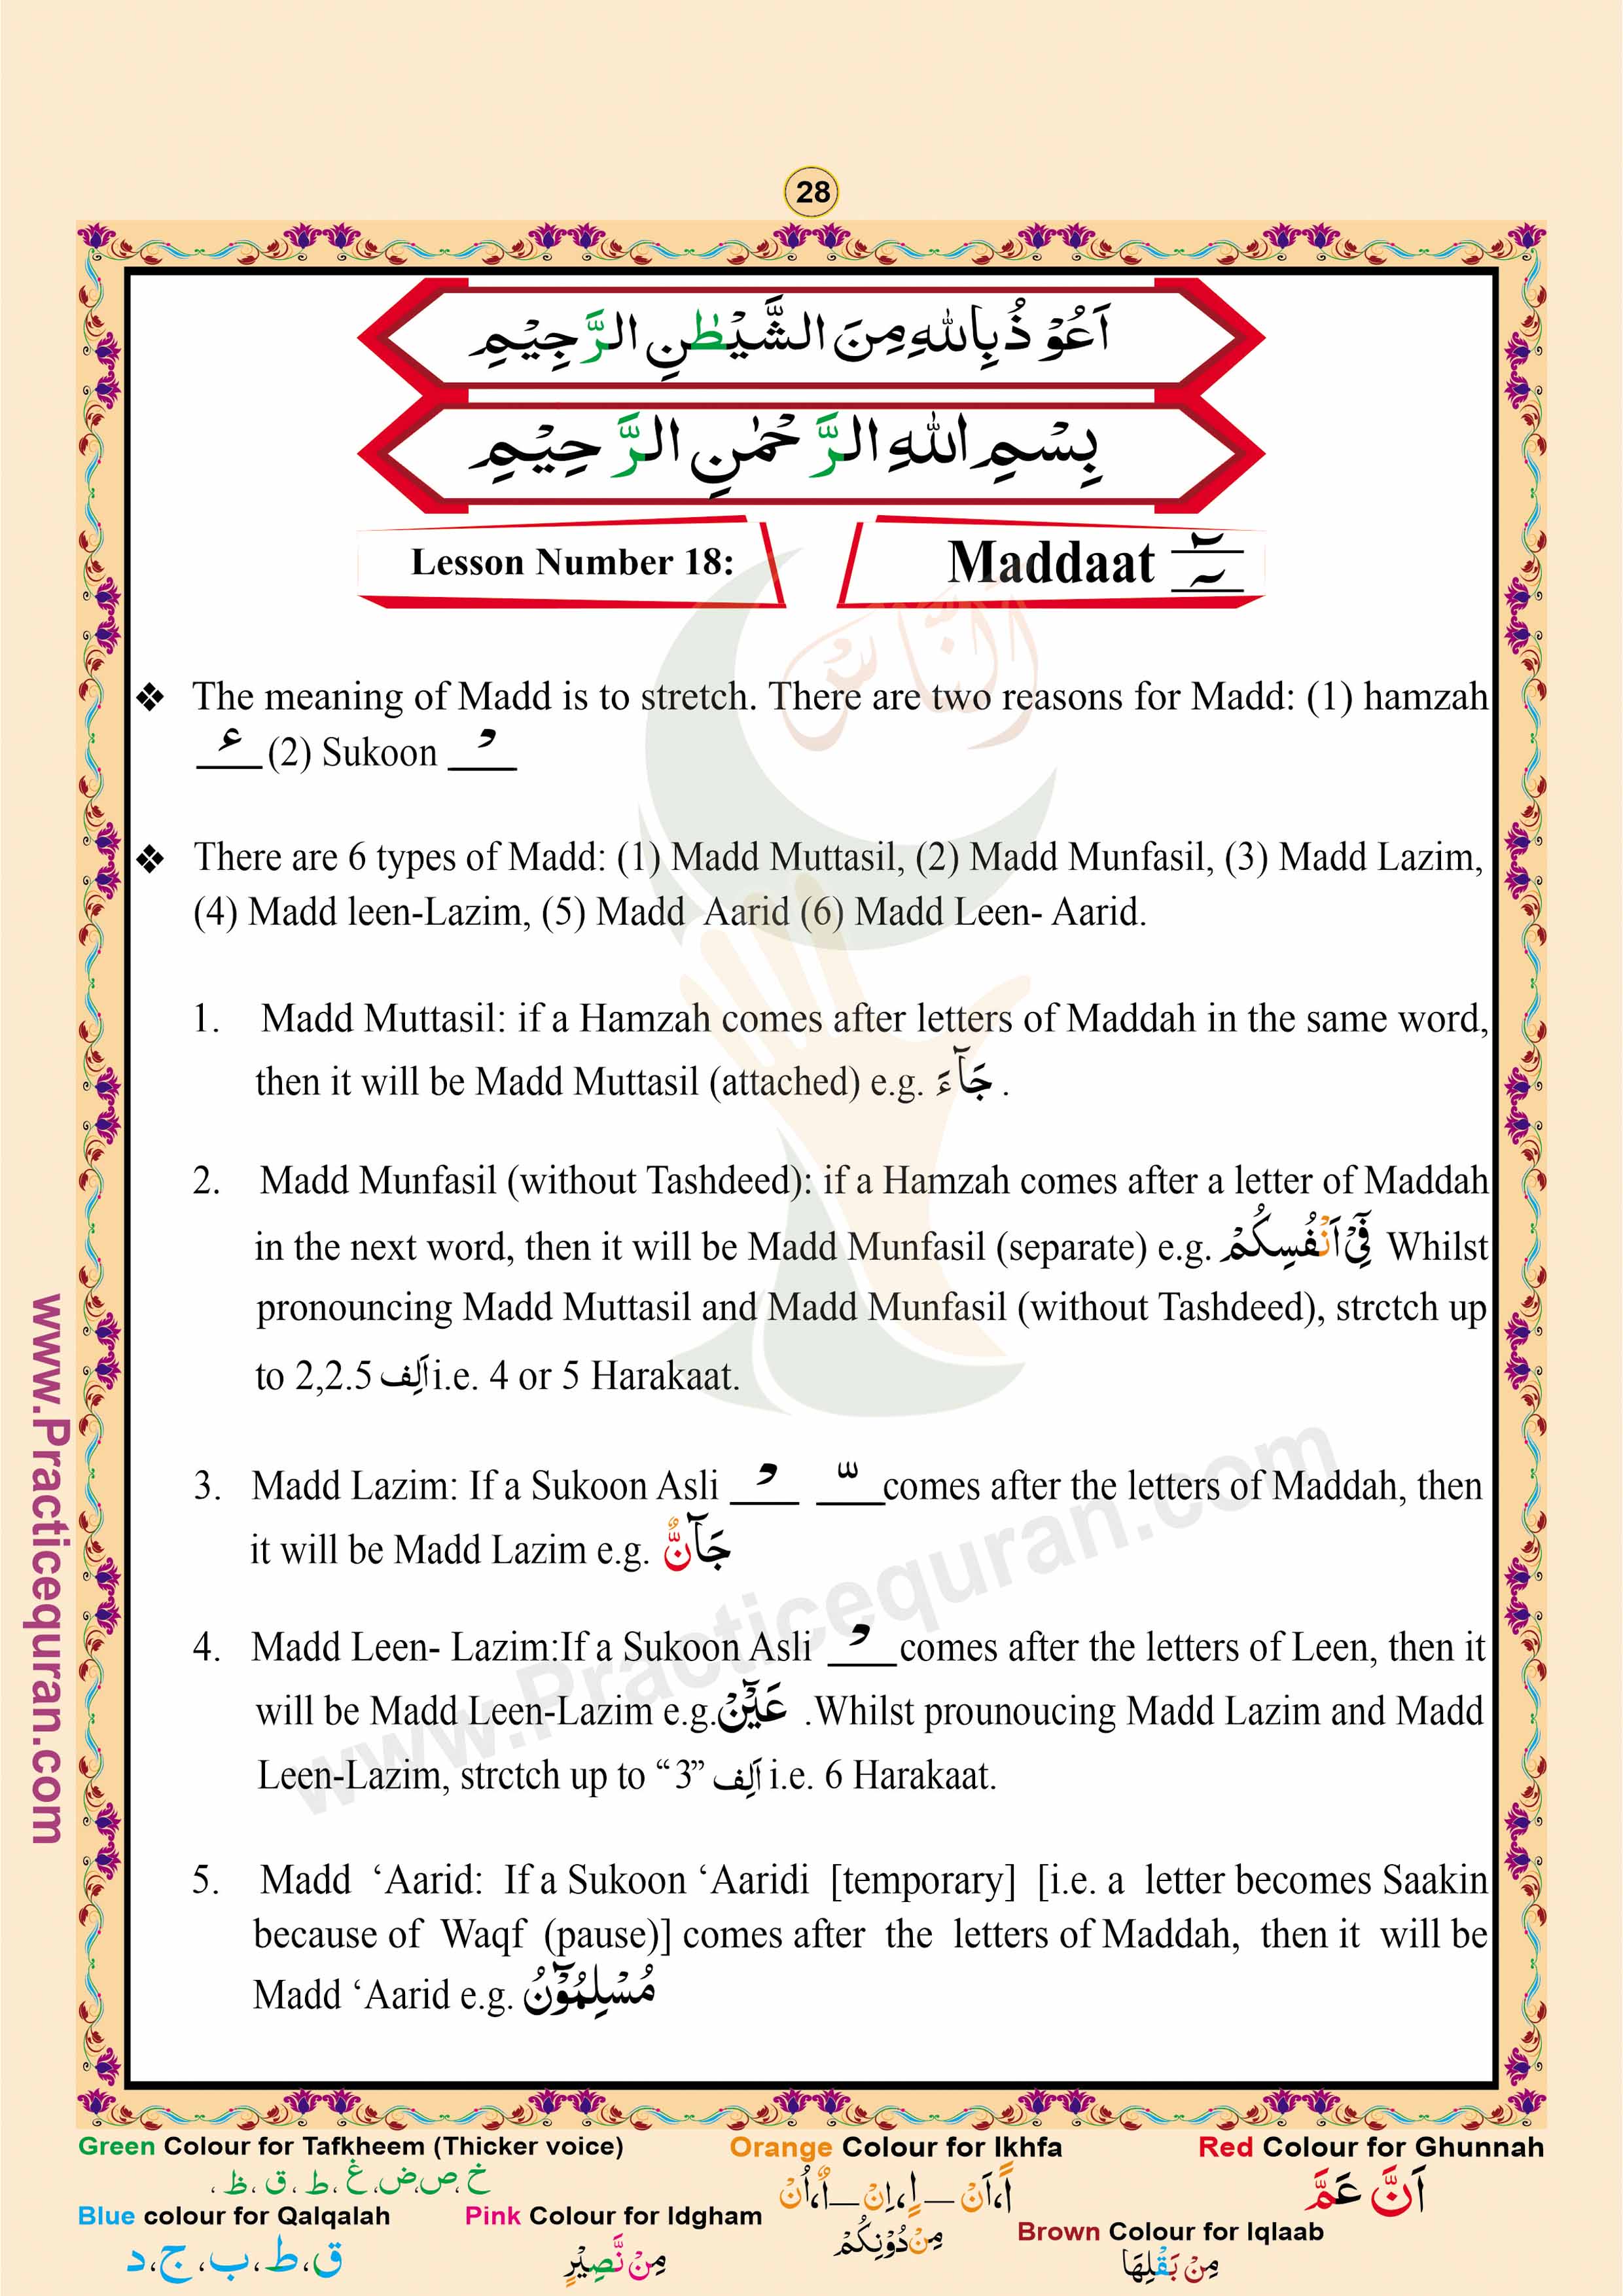 Read English Noorani Qaidah Page No 28, Practice Quran